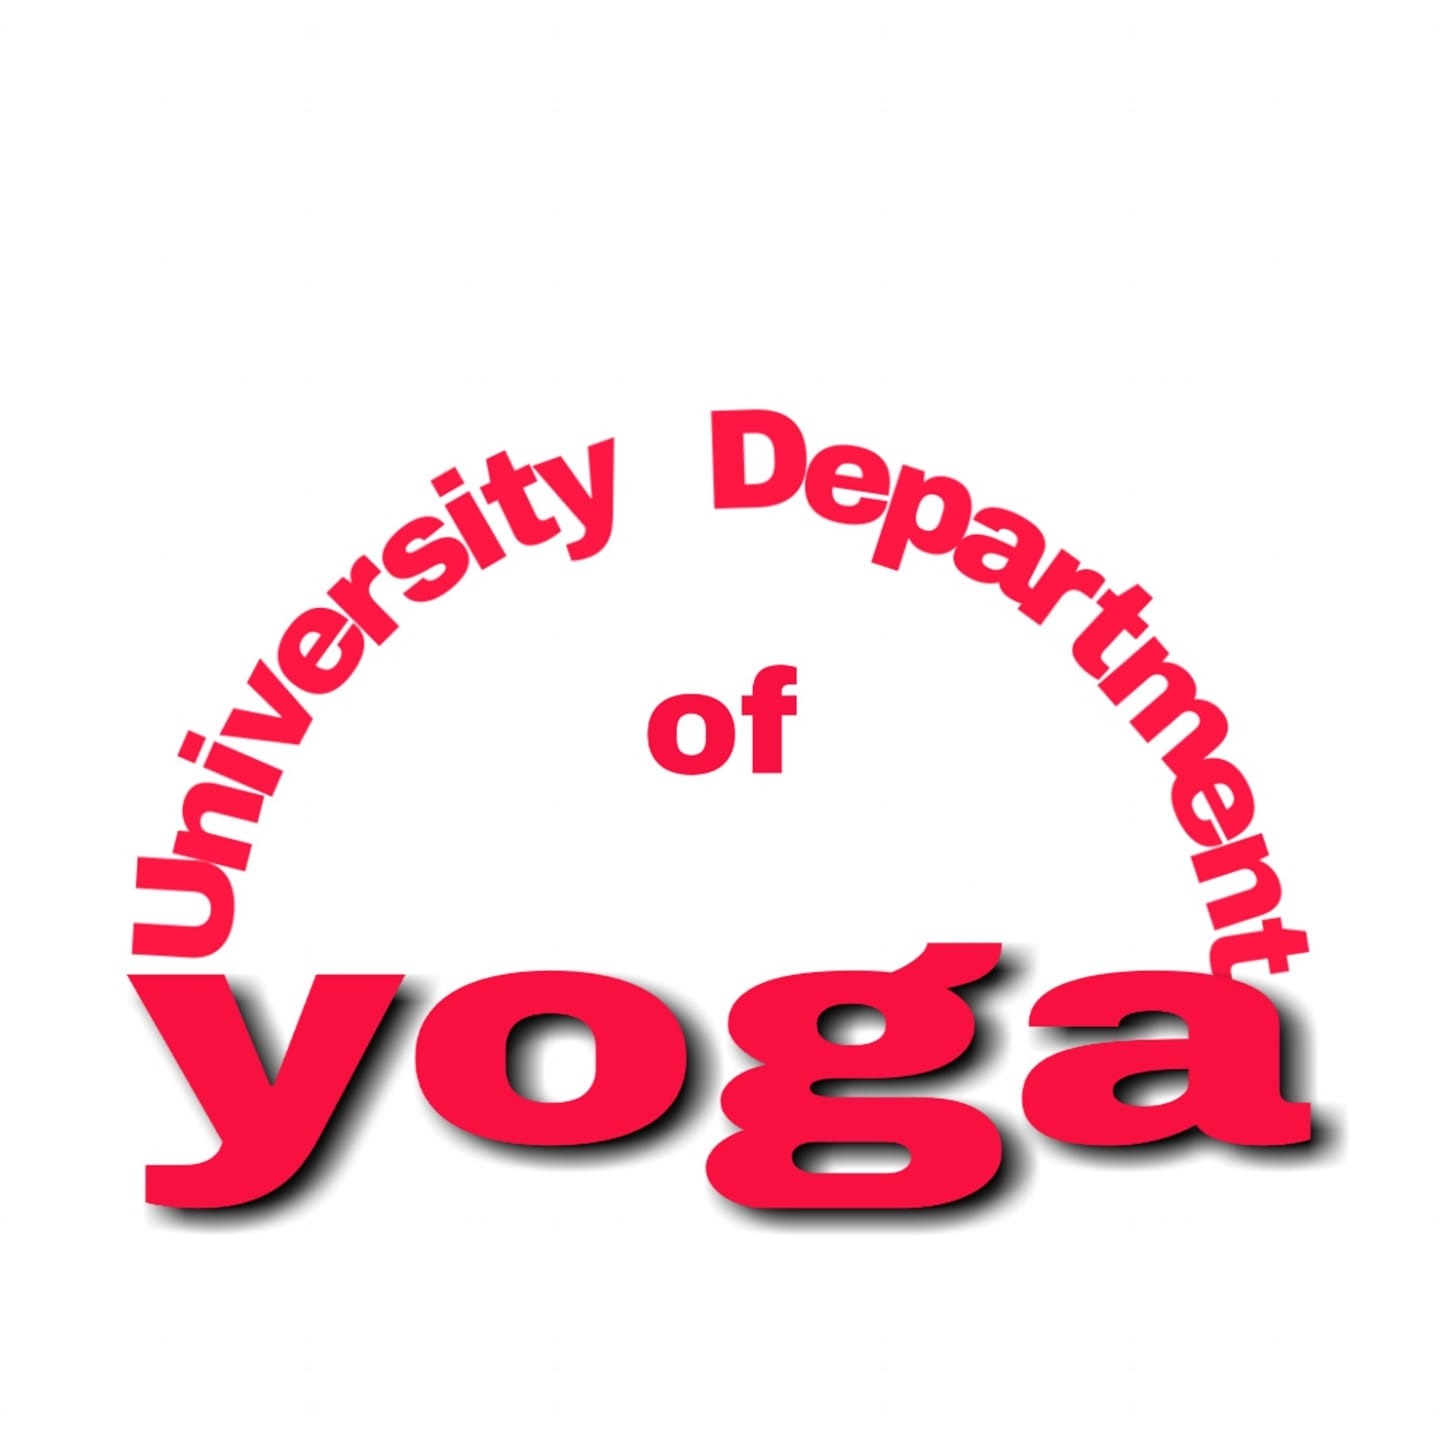 University Department of Yoga - Ranchi University Image